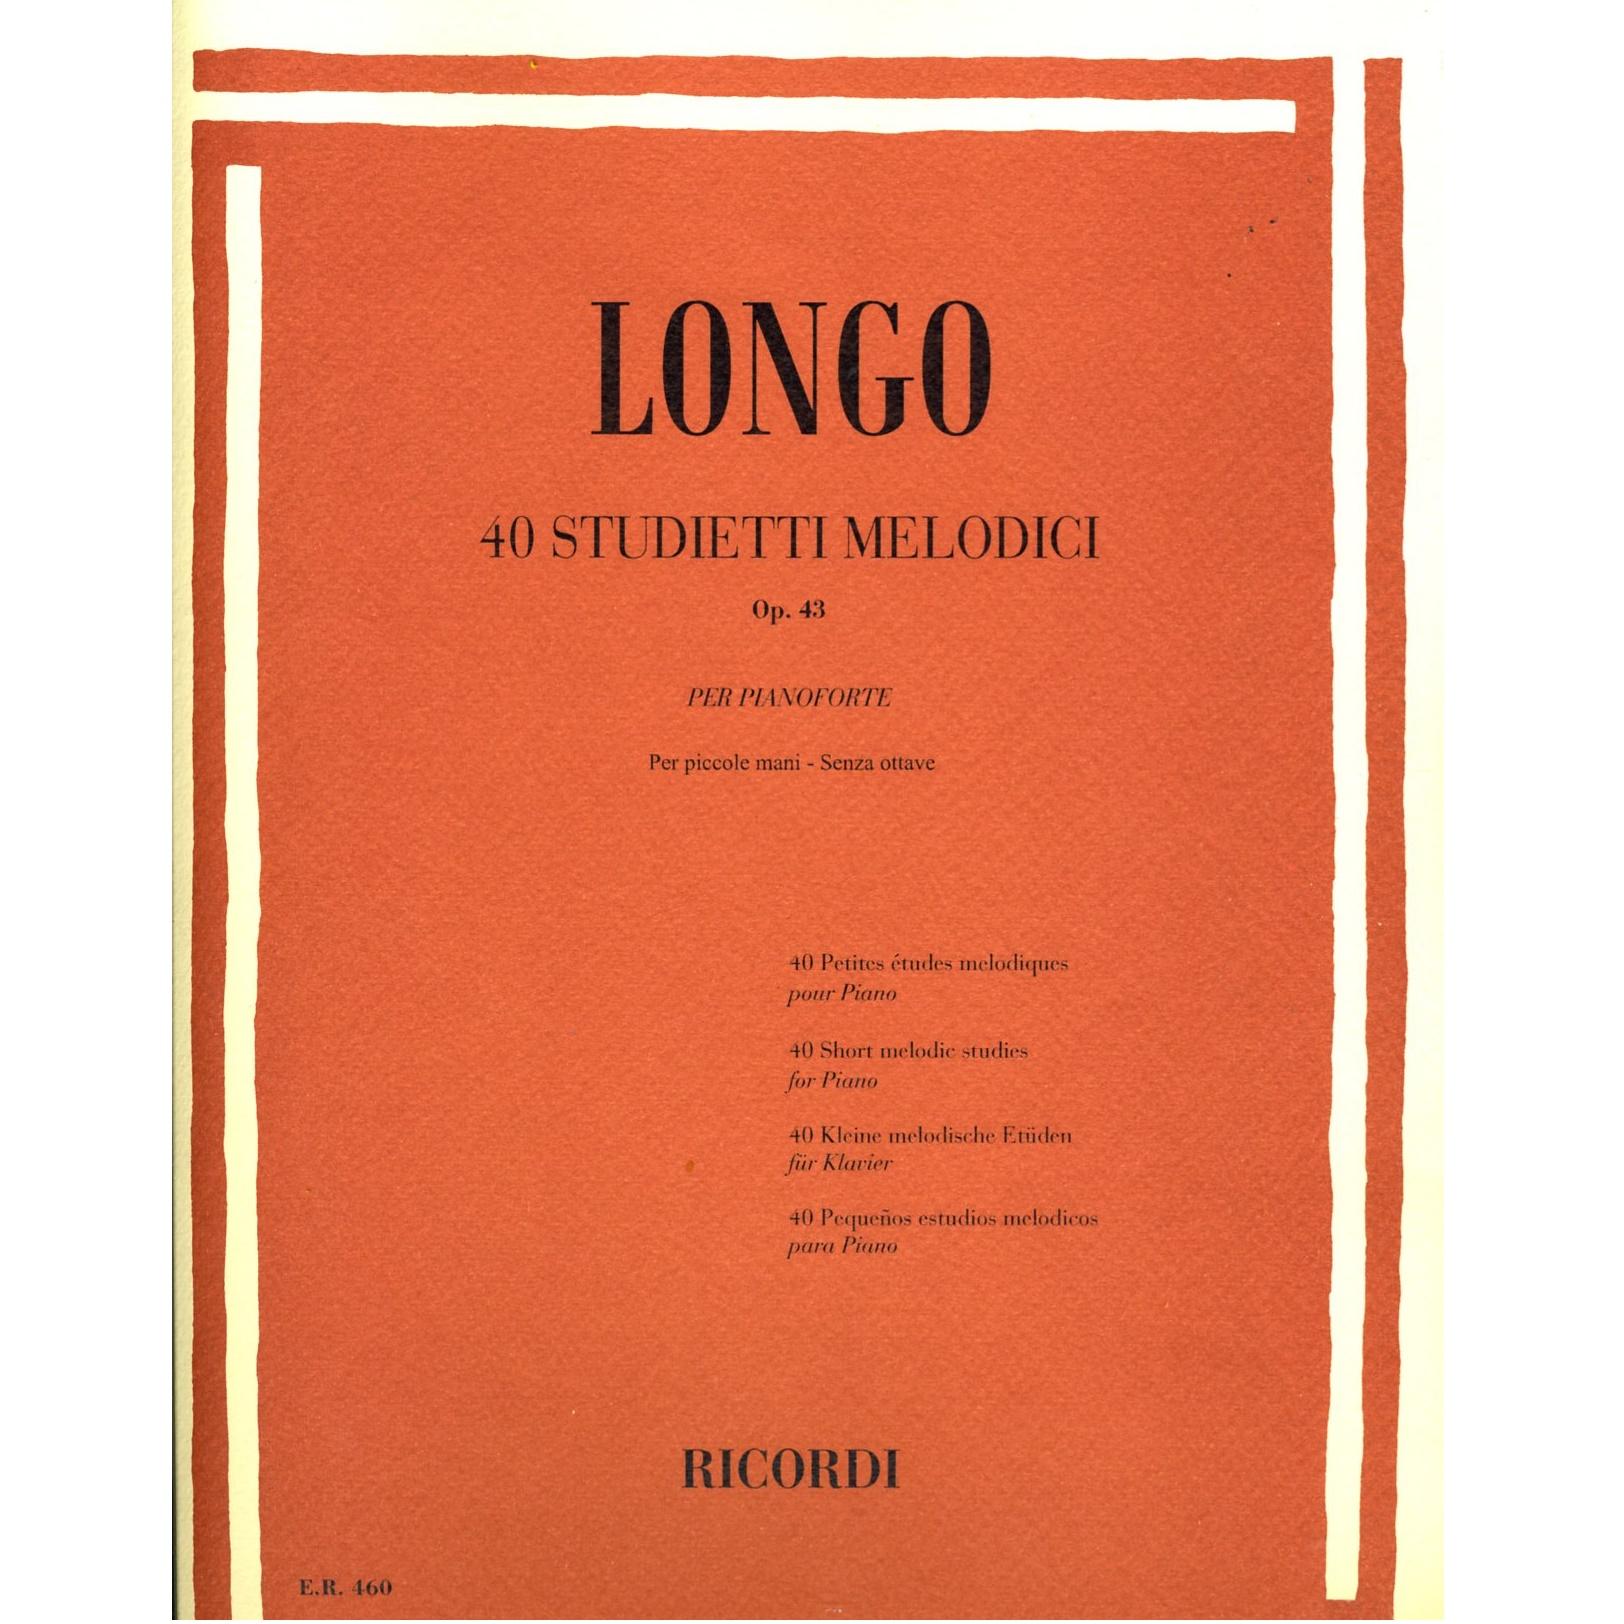 Longo 40 Studietti Melodici Op. 43 per pianoforte per piccole mani senza ottave - Ricordi